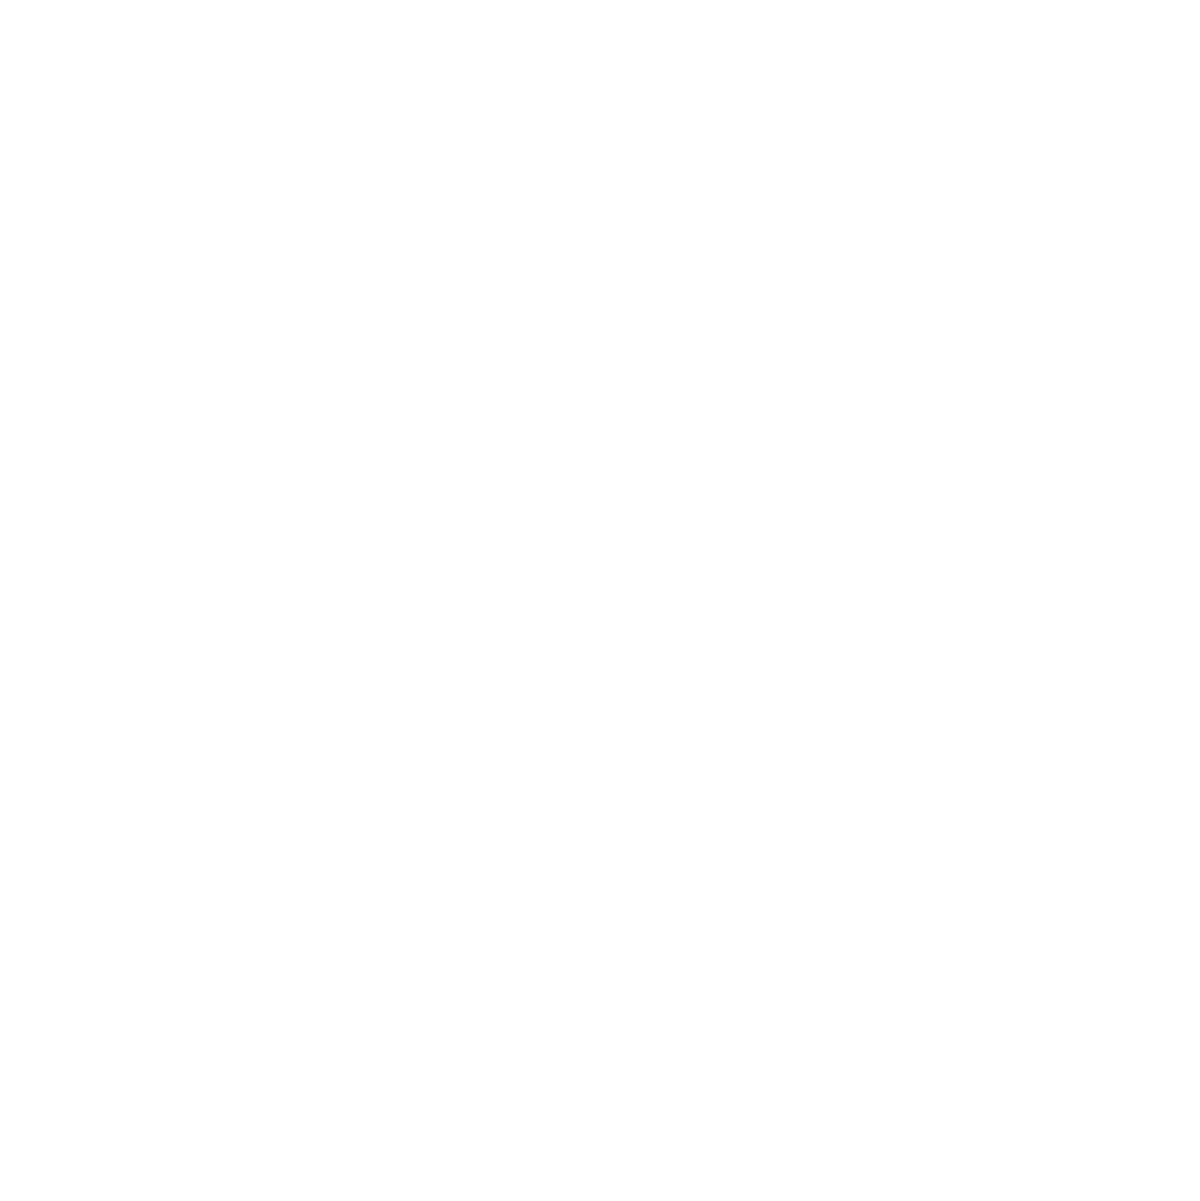 Jason Byrd